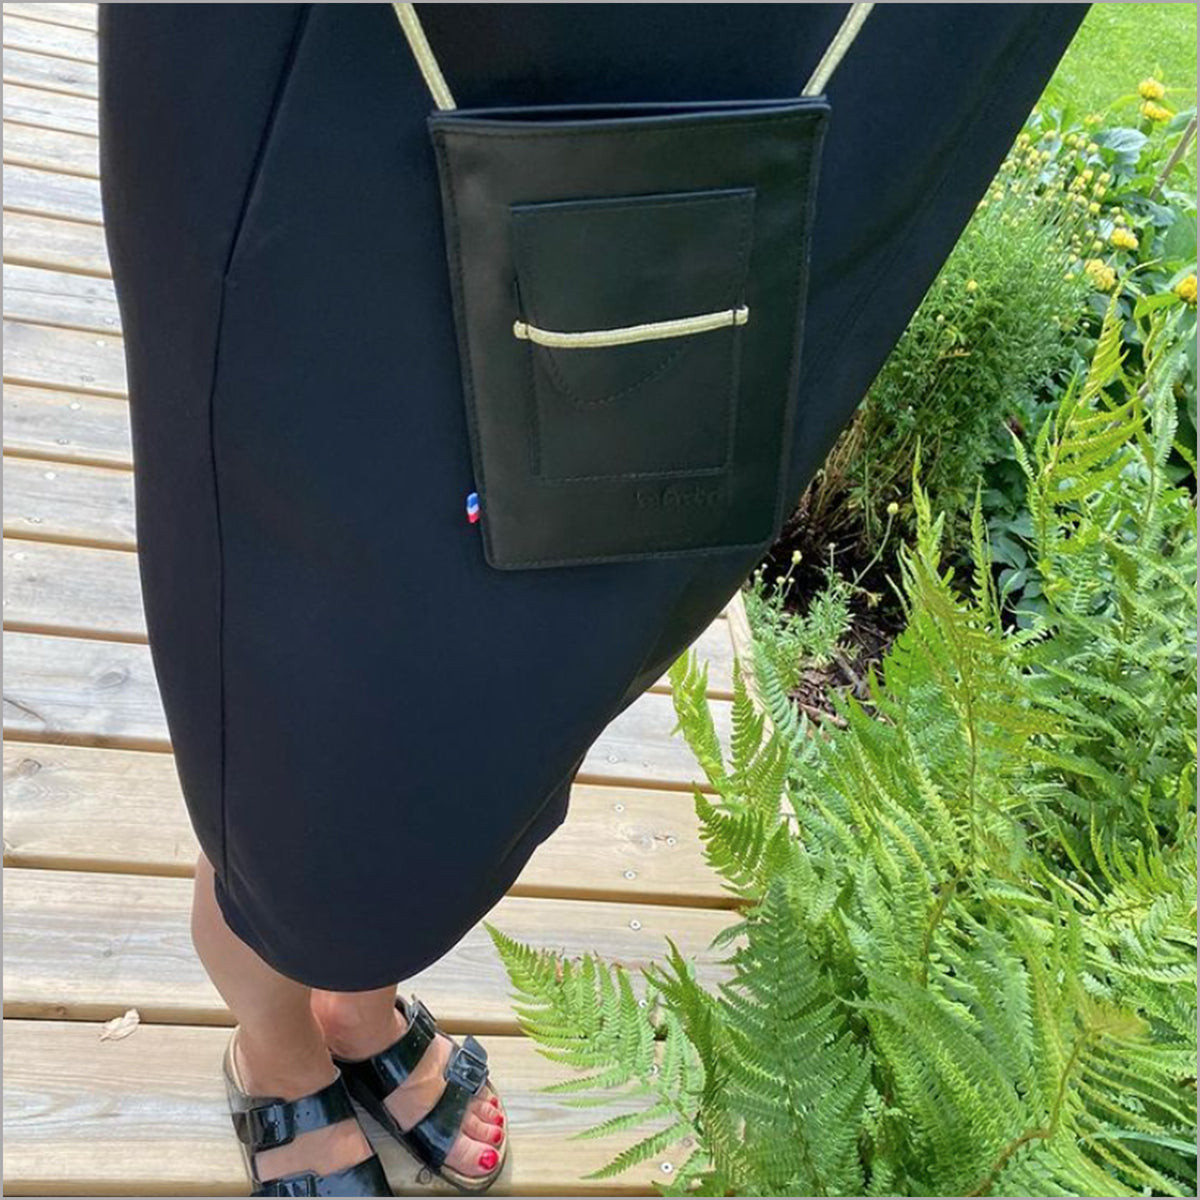 Black leather portable case with adjustable shoulder strap